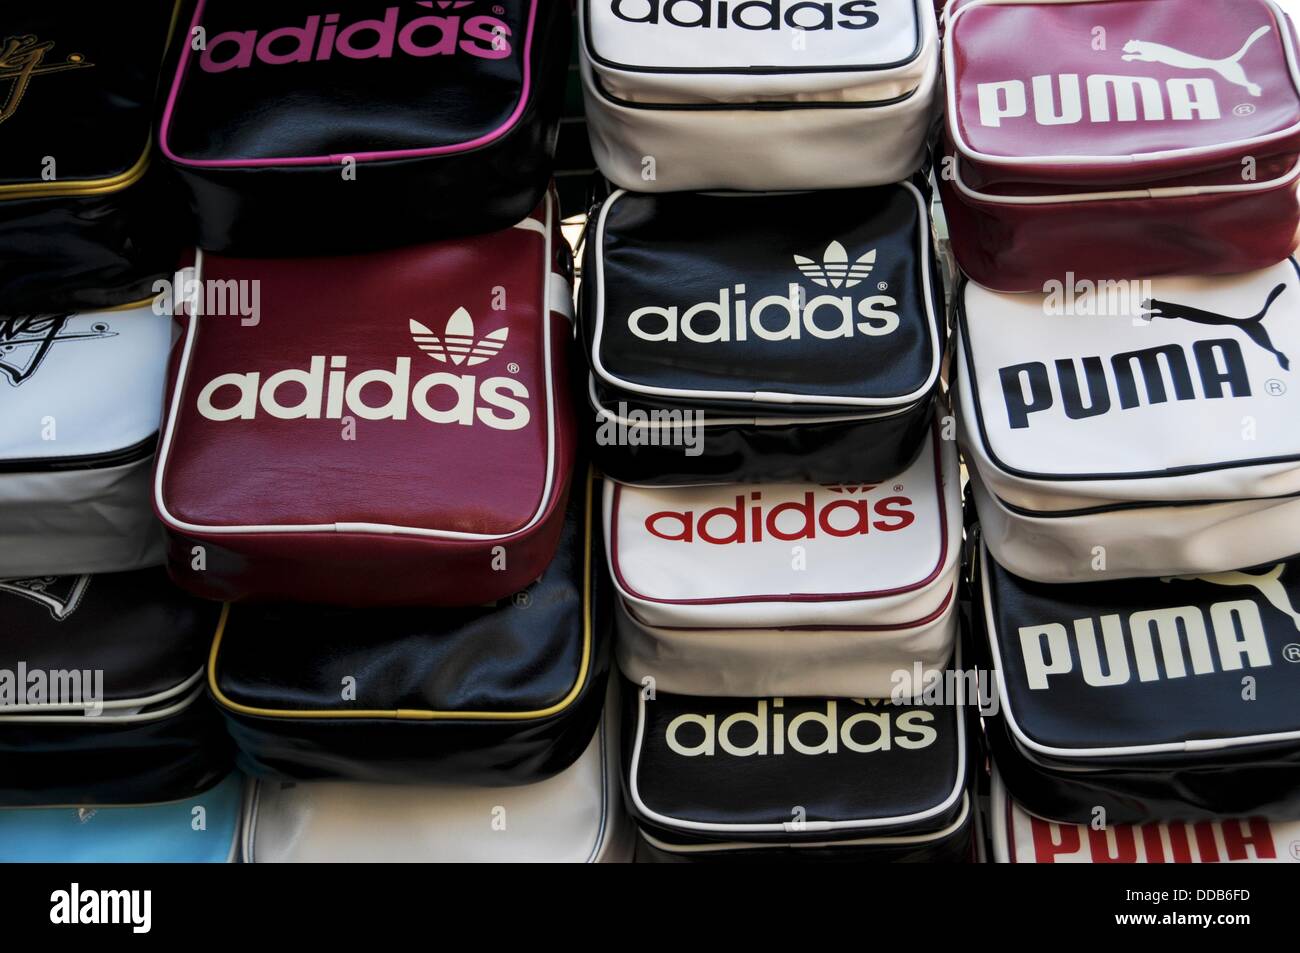 Fake Adidas and Puma sports bags at a market in Bangkok Stock Photo - Alamy